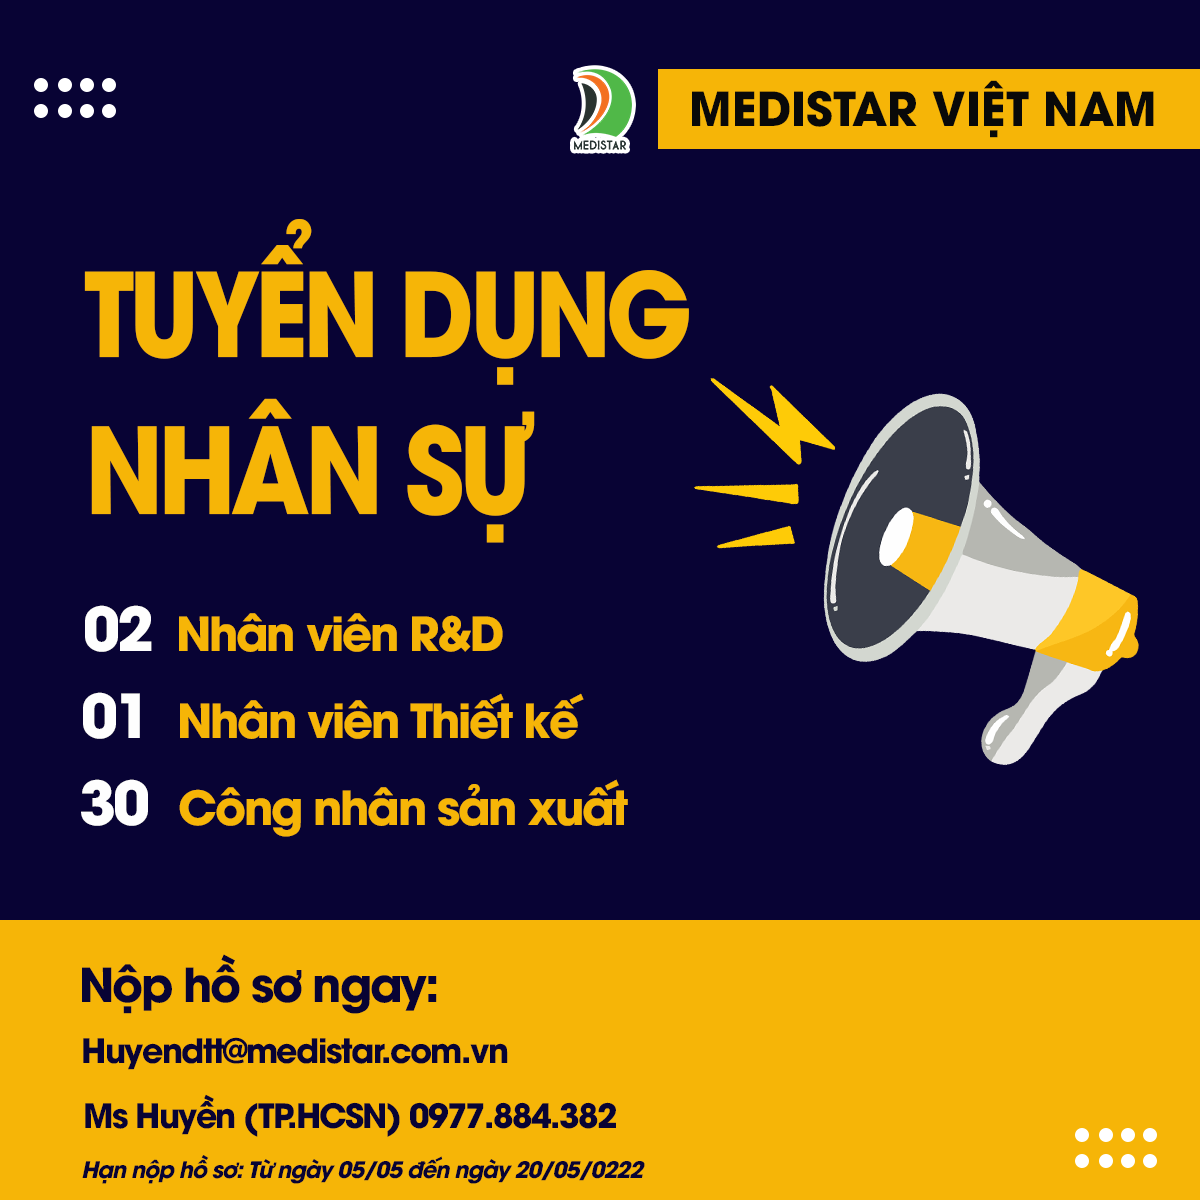 Cơ hội nghề nghiệp hấp dẫn - Medistar Việt Nam thông báo tuyển dụng nhân sự tháng 5!